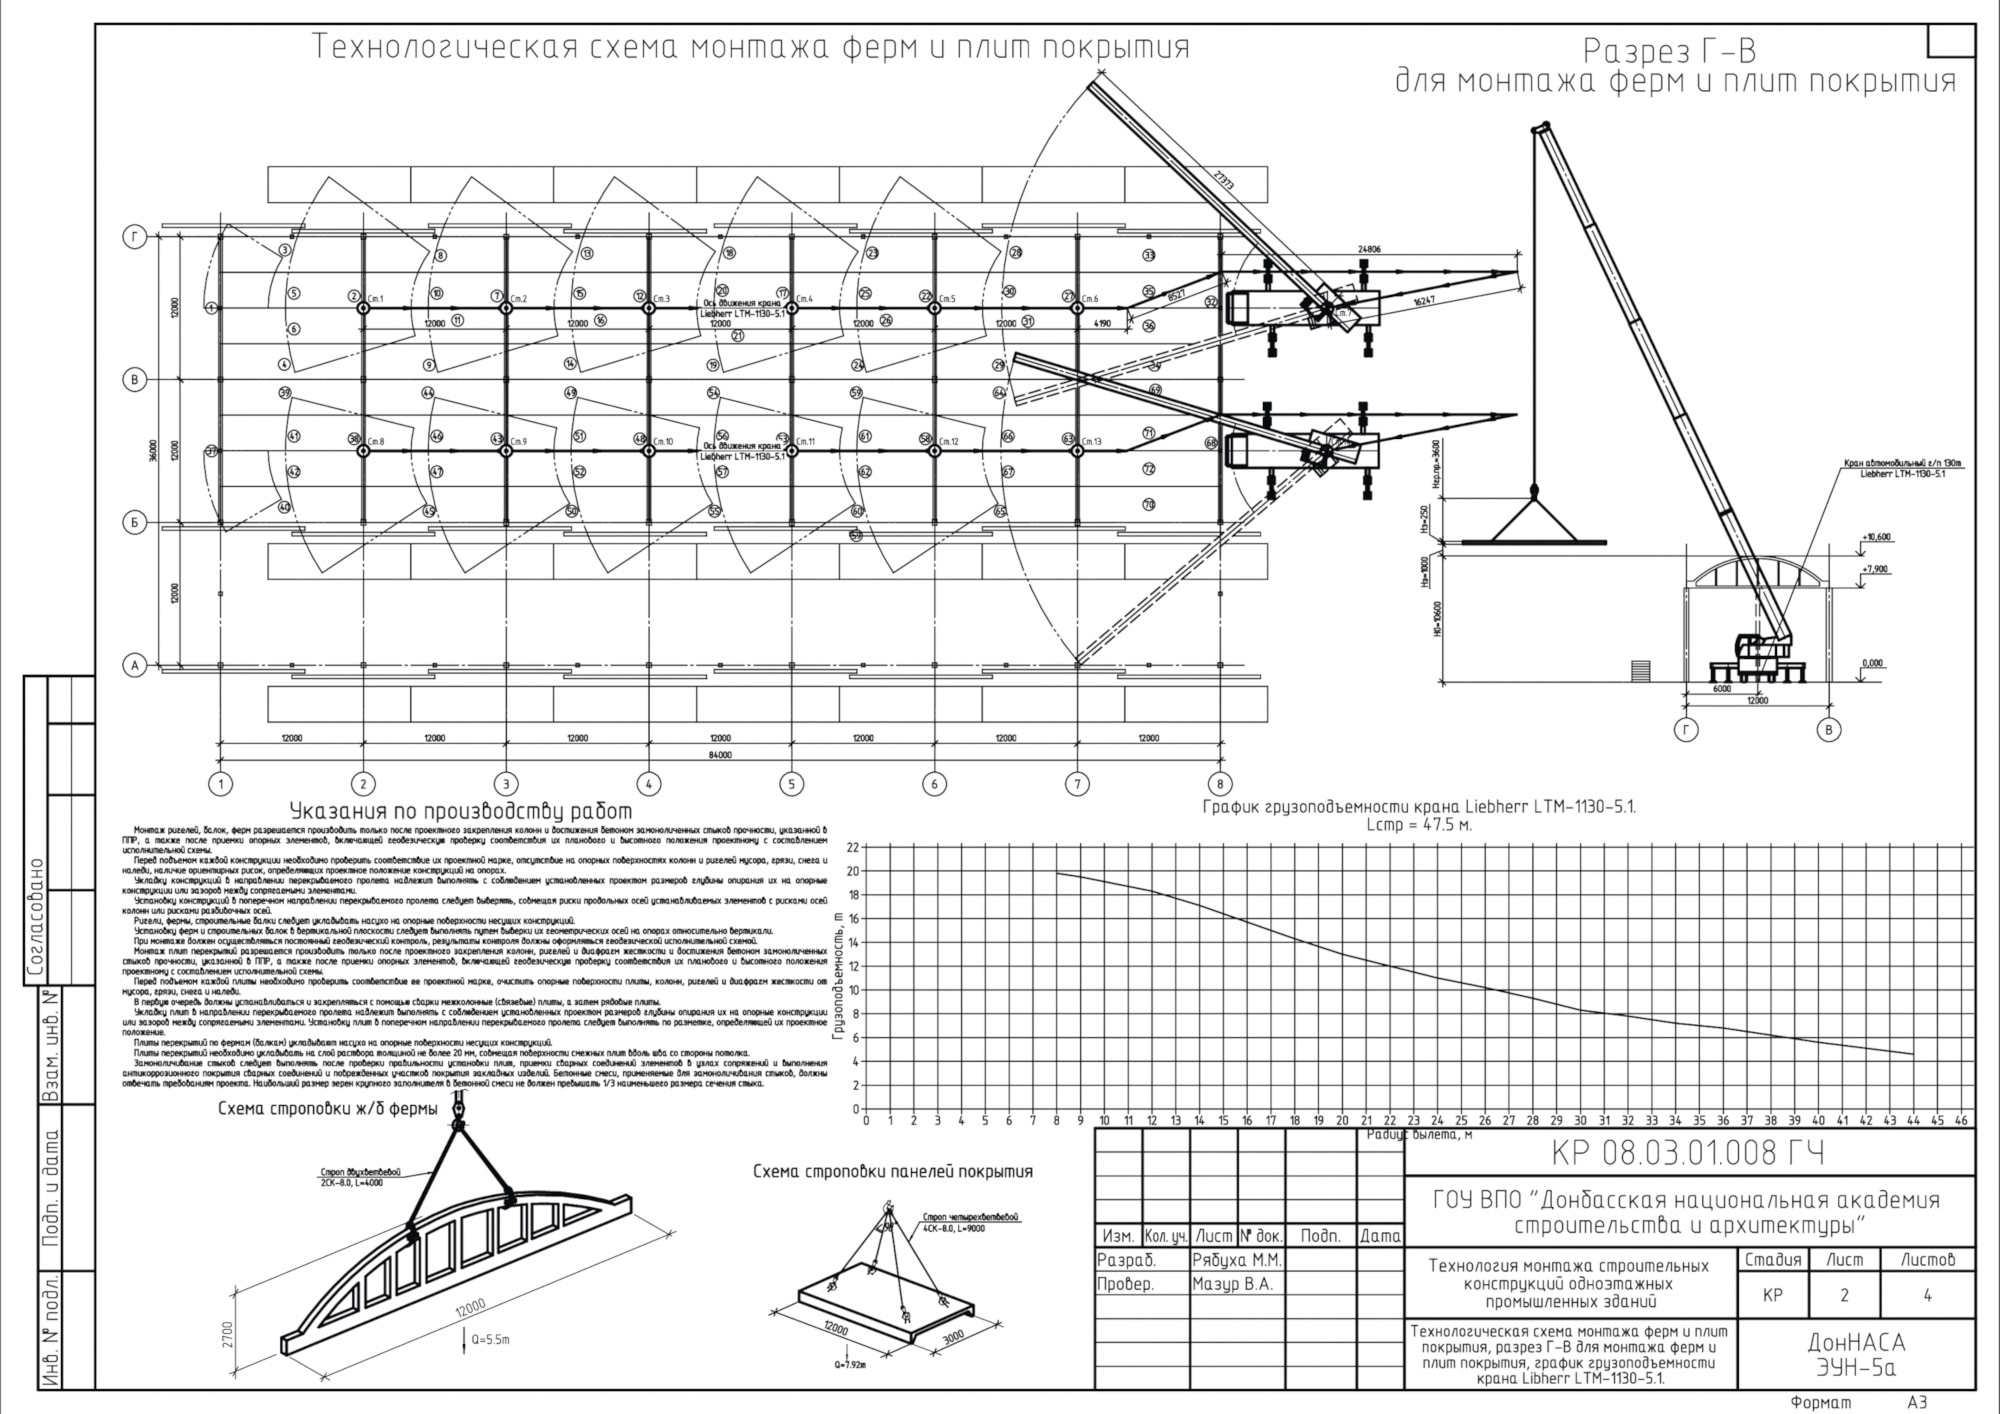 Фрагмент конкурсной работы Маргариты Рябухи: схемы монтажа строительных конструкций одноэтажного промышленного здания